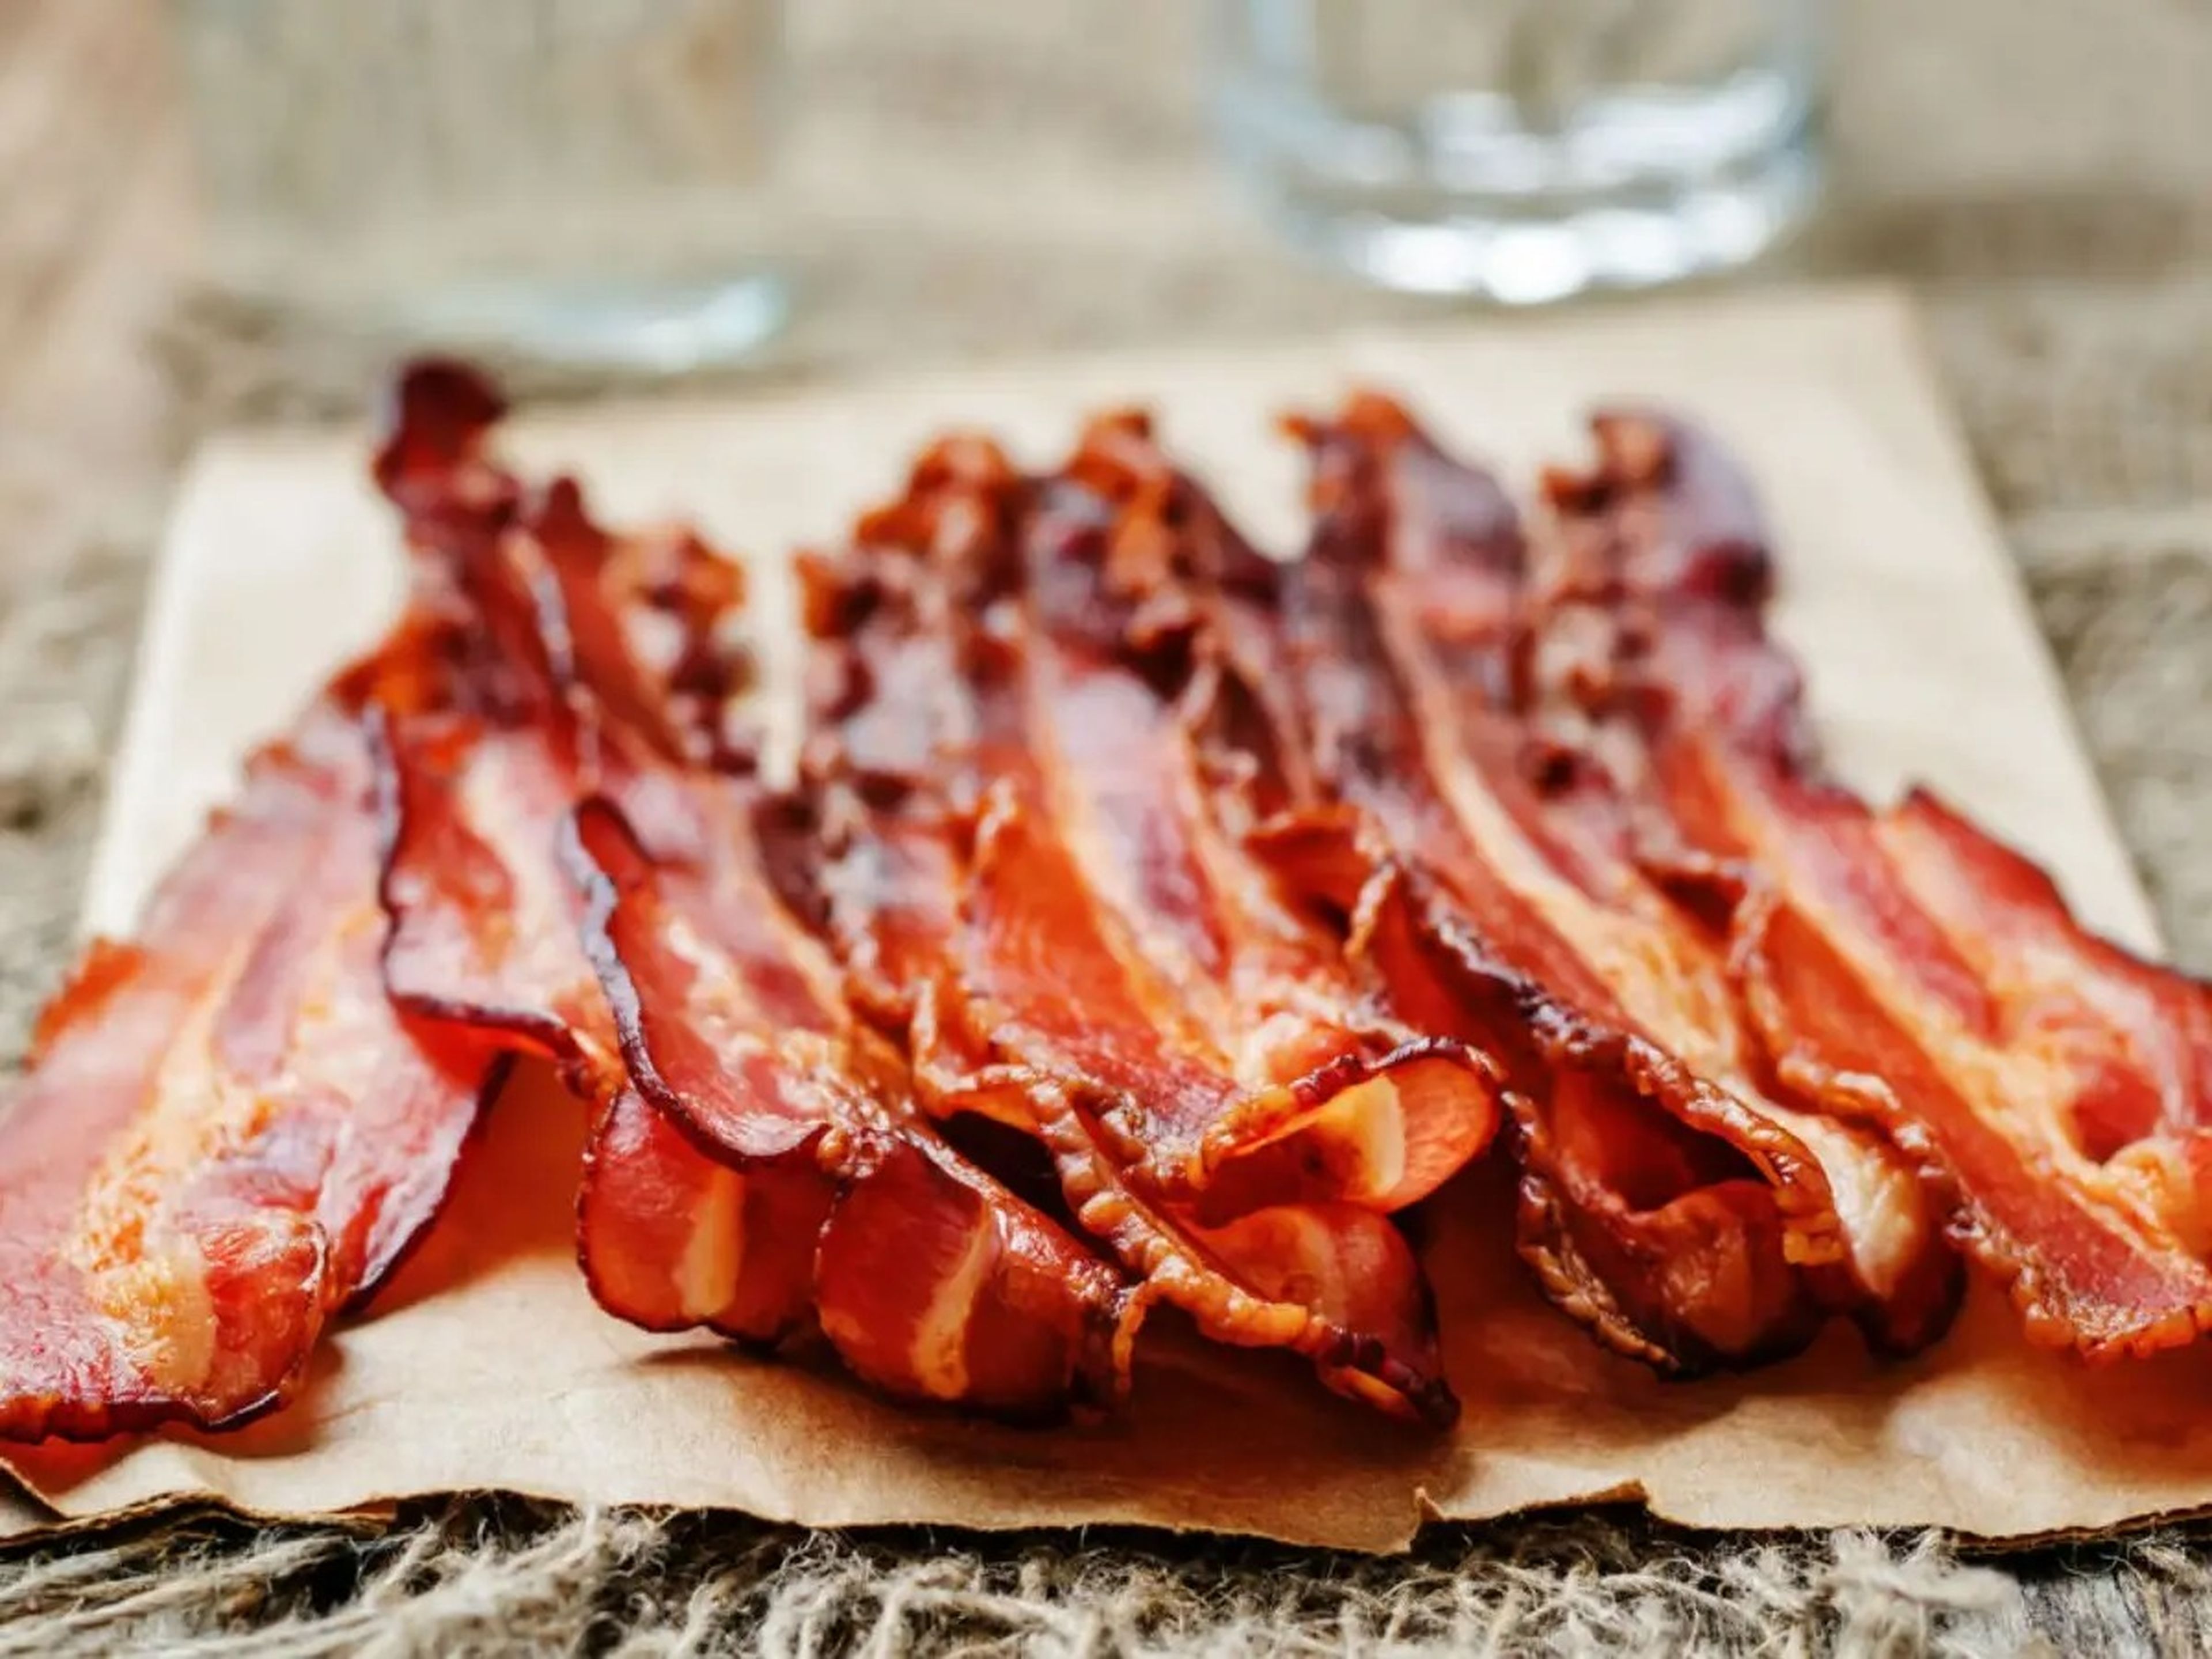 Bacon.